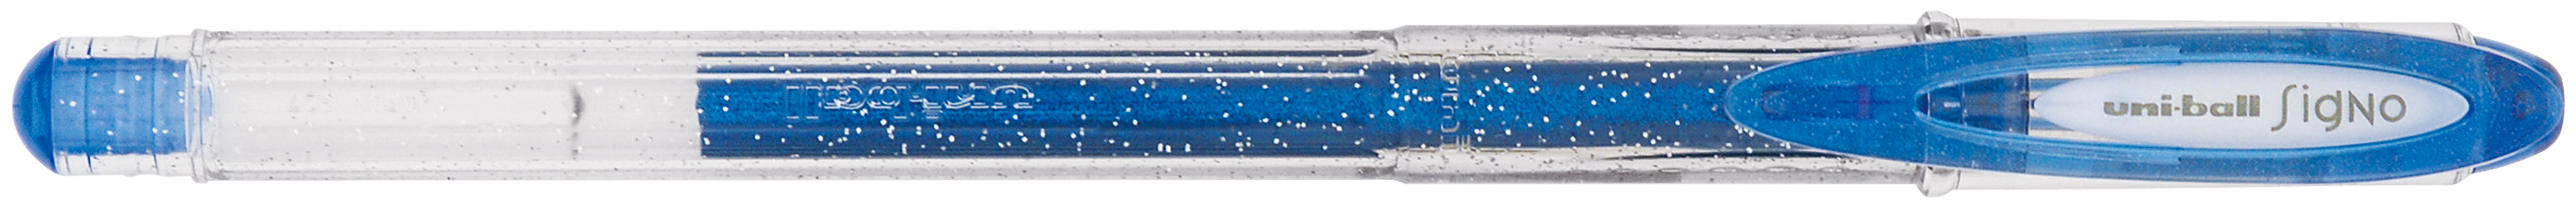 UNI-BALL Signo Sparkling 1mm UM120SP BLUE bleu bleu